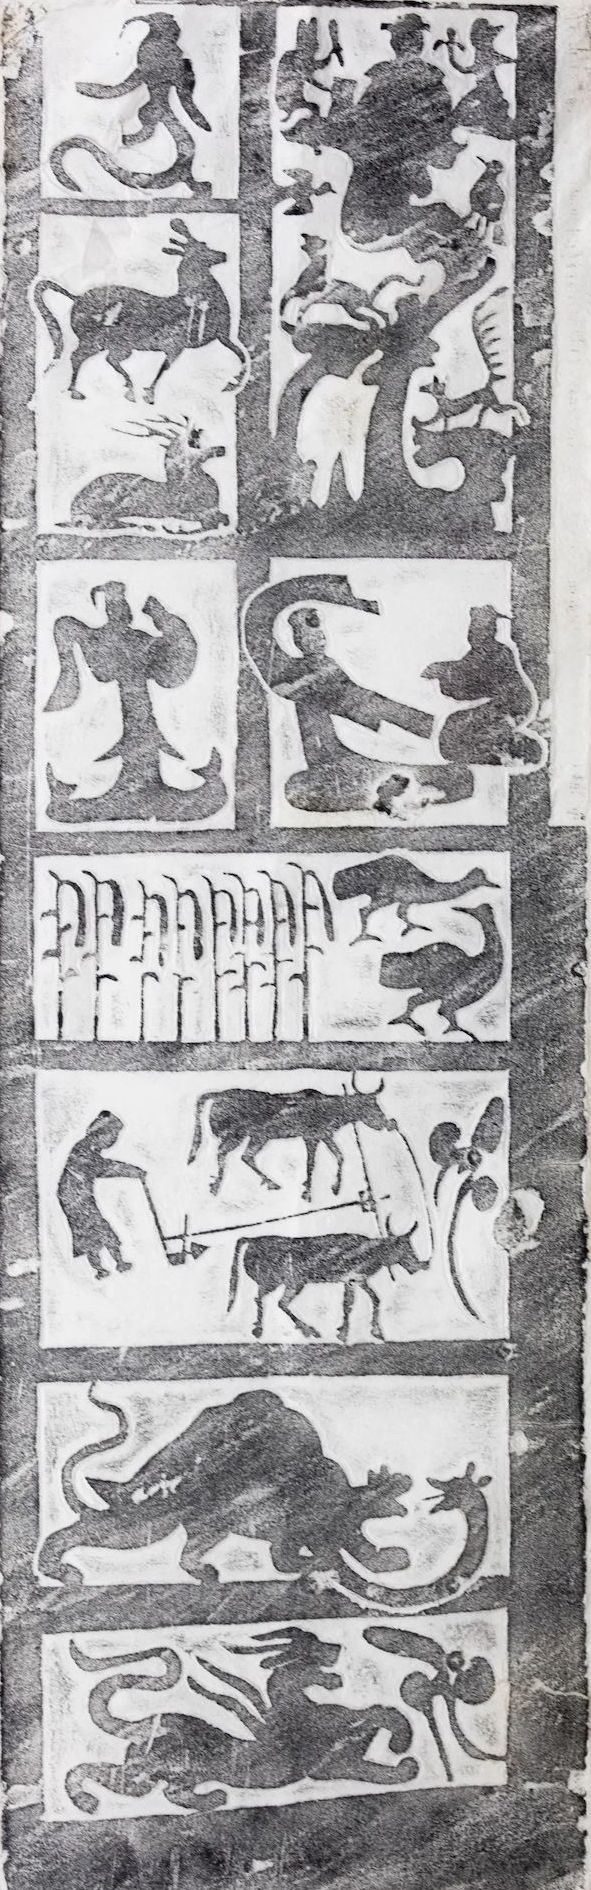 古代牛耕图片